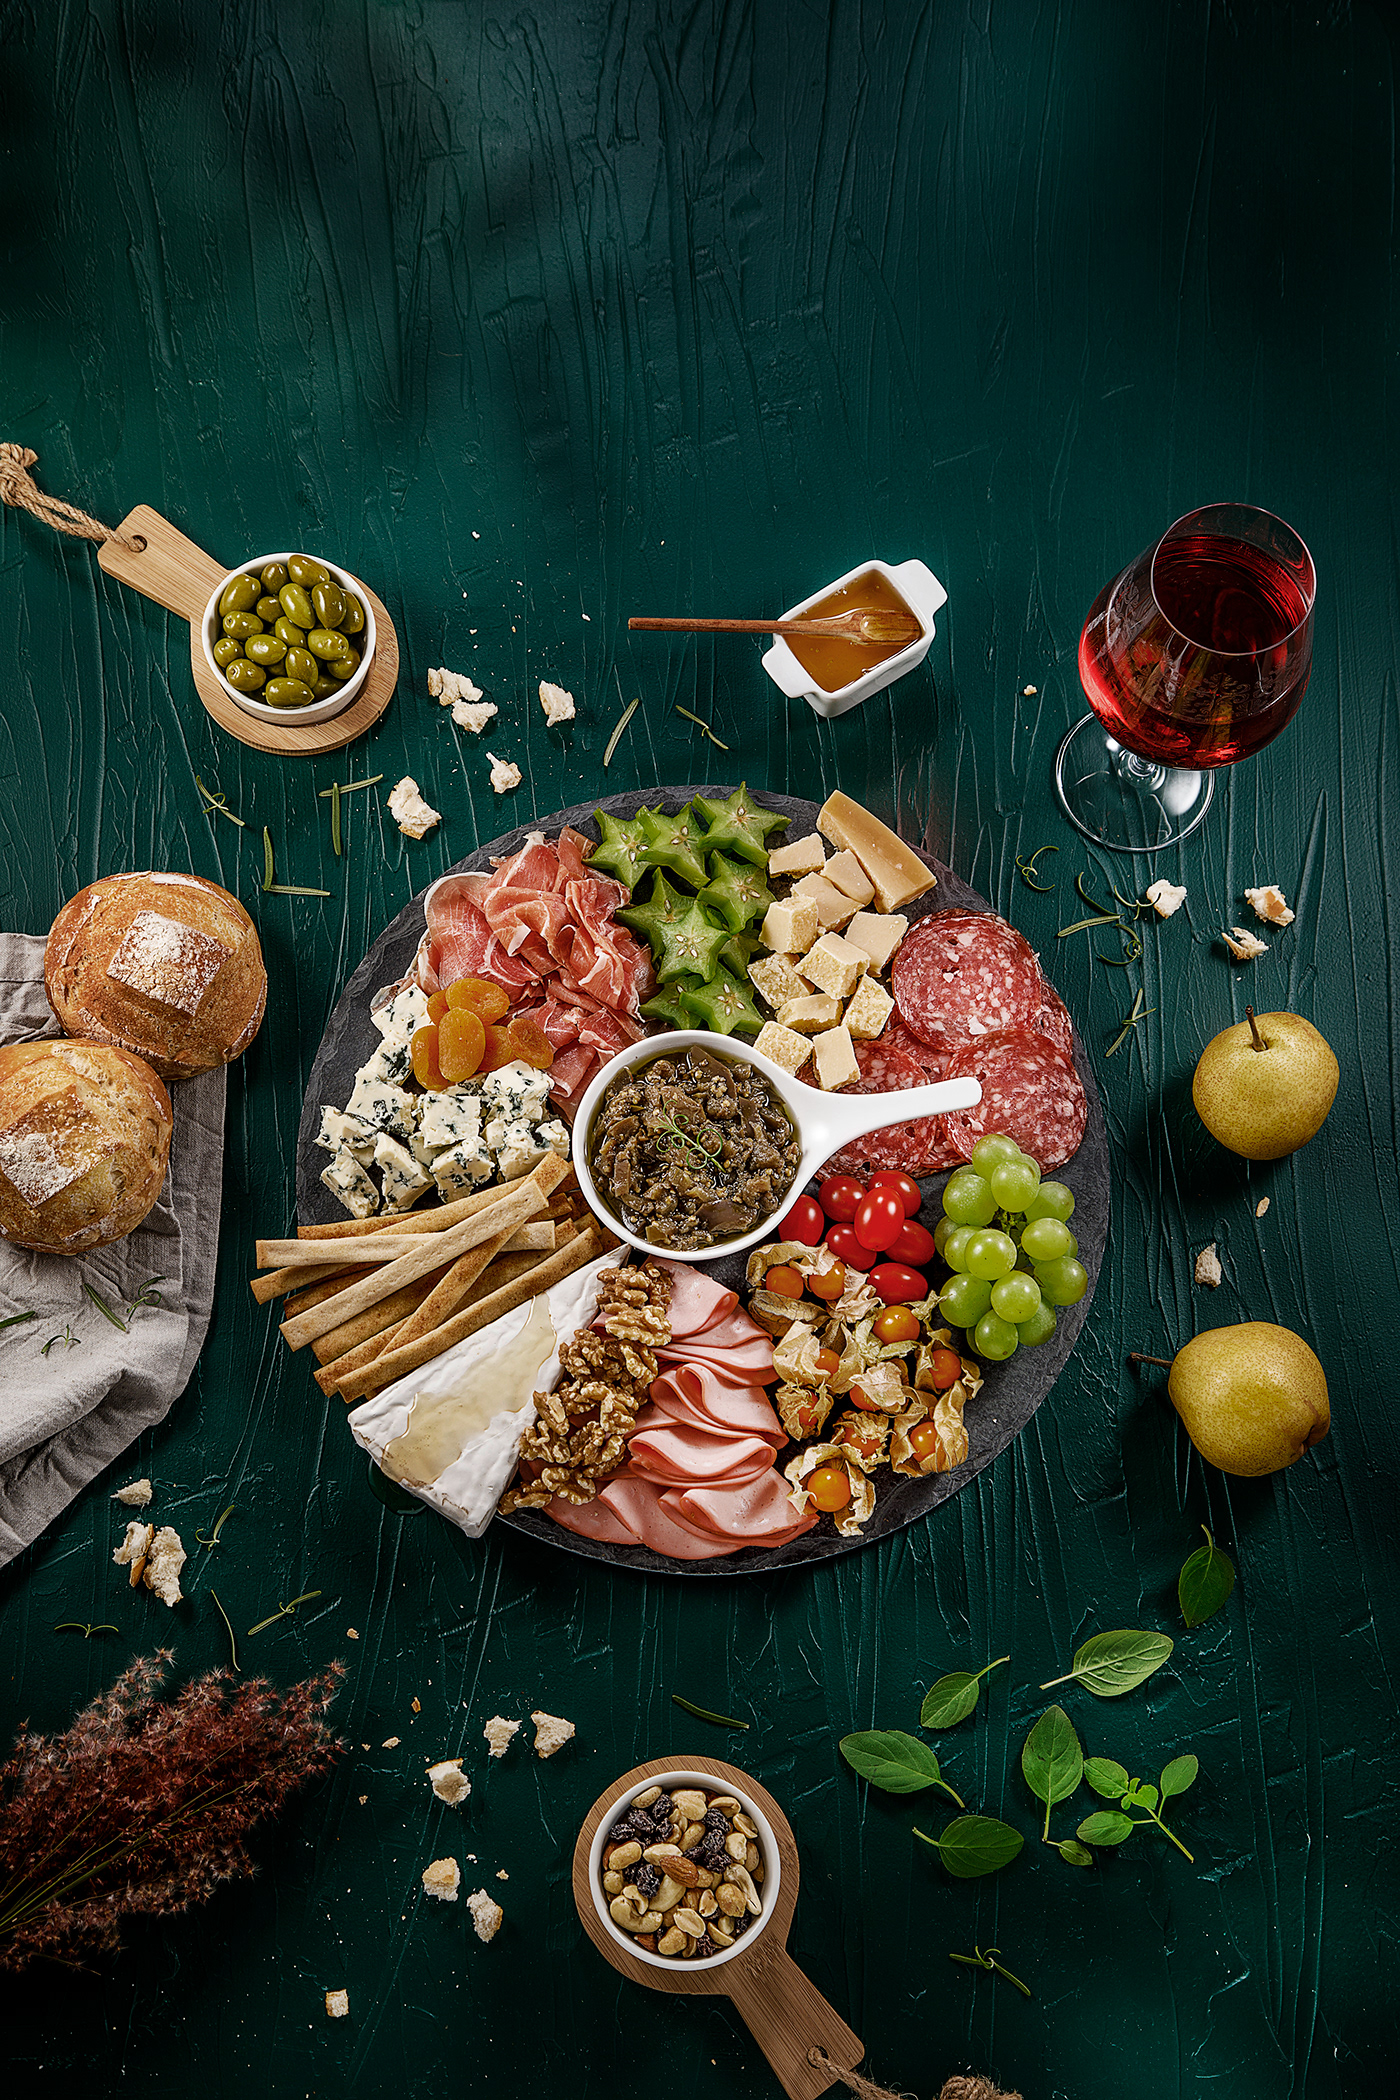 Campanha de Inverno comida italiana food styling Fotografia de Comida inverno massas sopas supermercado tabloide vinho